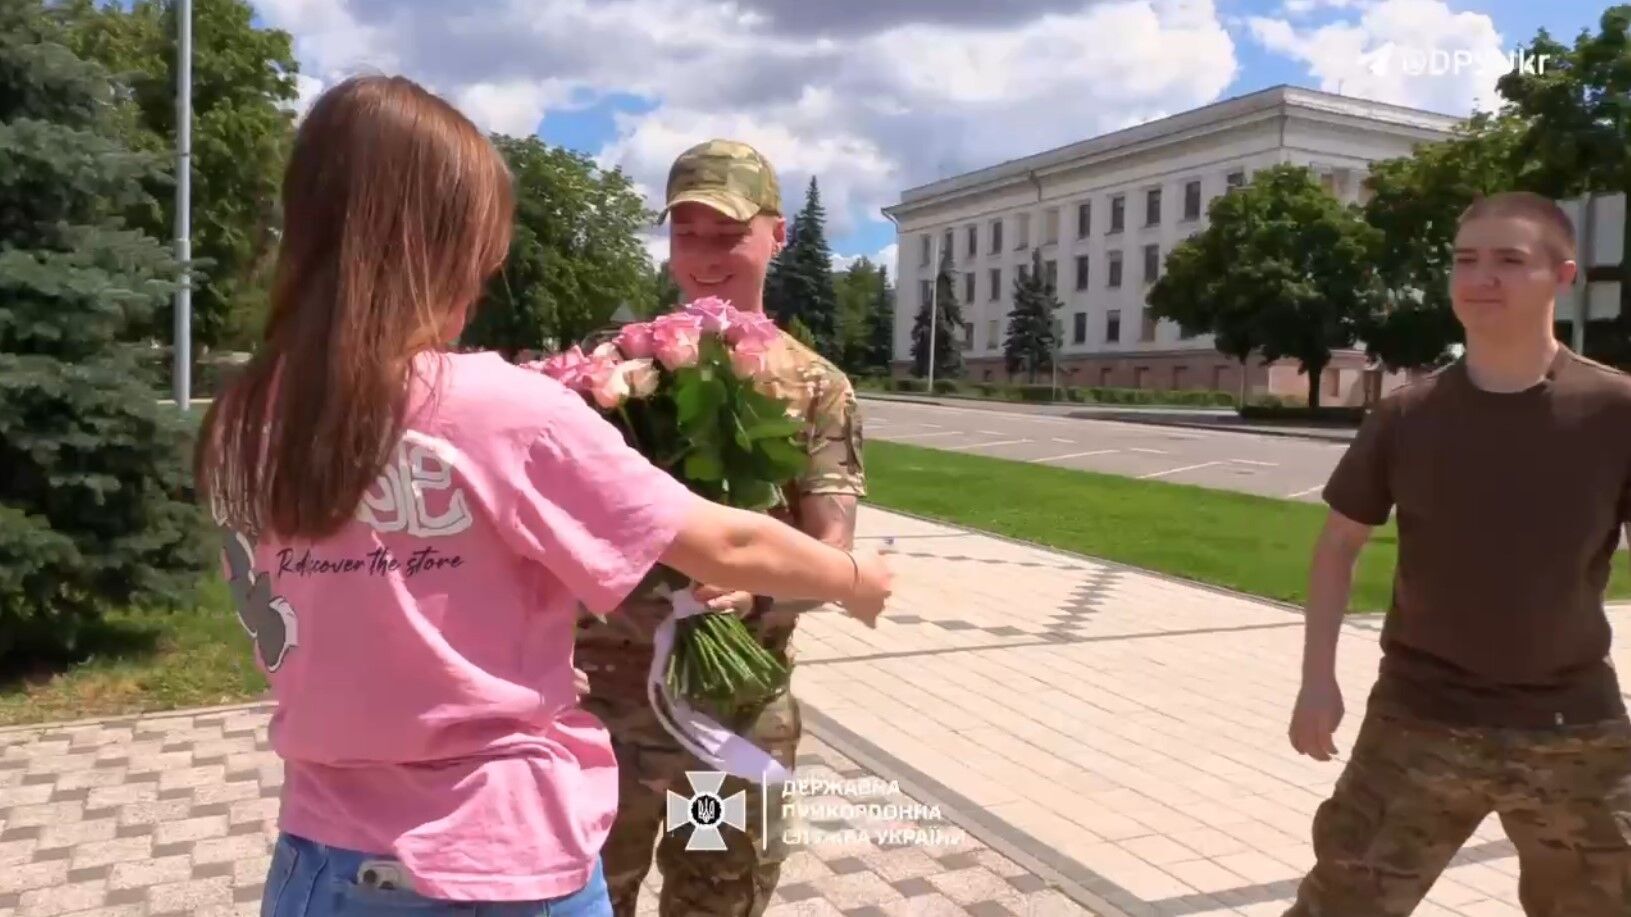 Український прикордонник освідчився коханій у прифронтовому місті: зворушливе відео